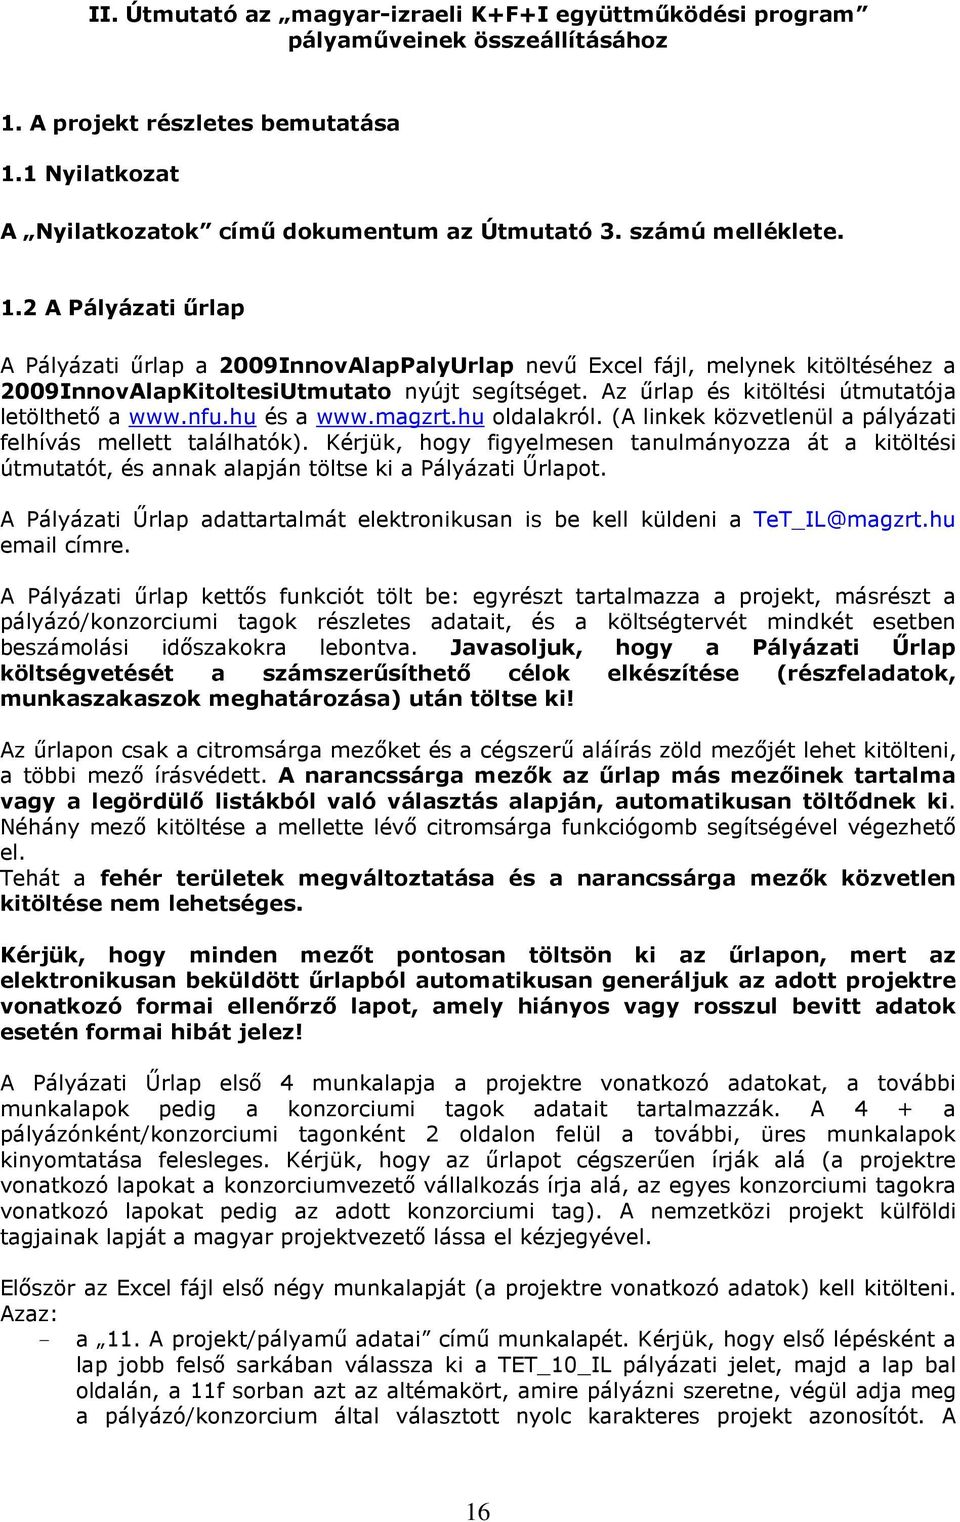 Az őrlap és kitöltési útmutatója letölthetı a www.nfu.hu és a www.magzrt.hu oldalakról. (A linkek közvetlenül a pályázati felhívás mellett találhatók).